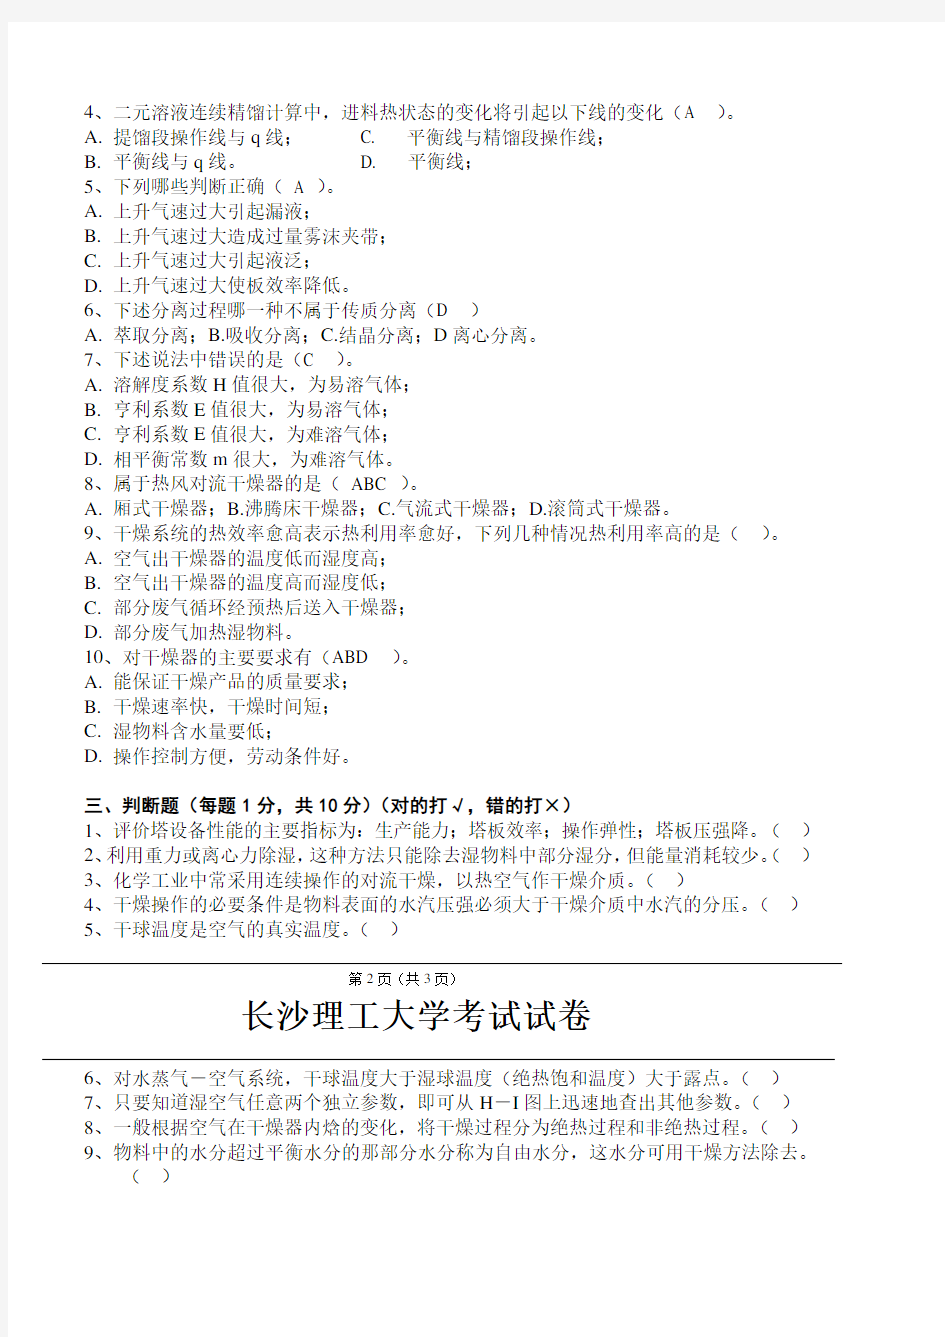 长沙理工大学考试试卷(下册2)